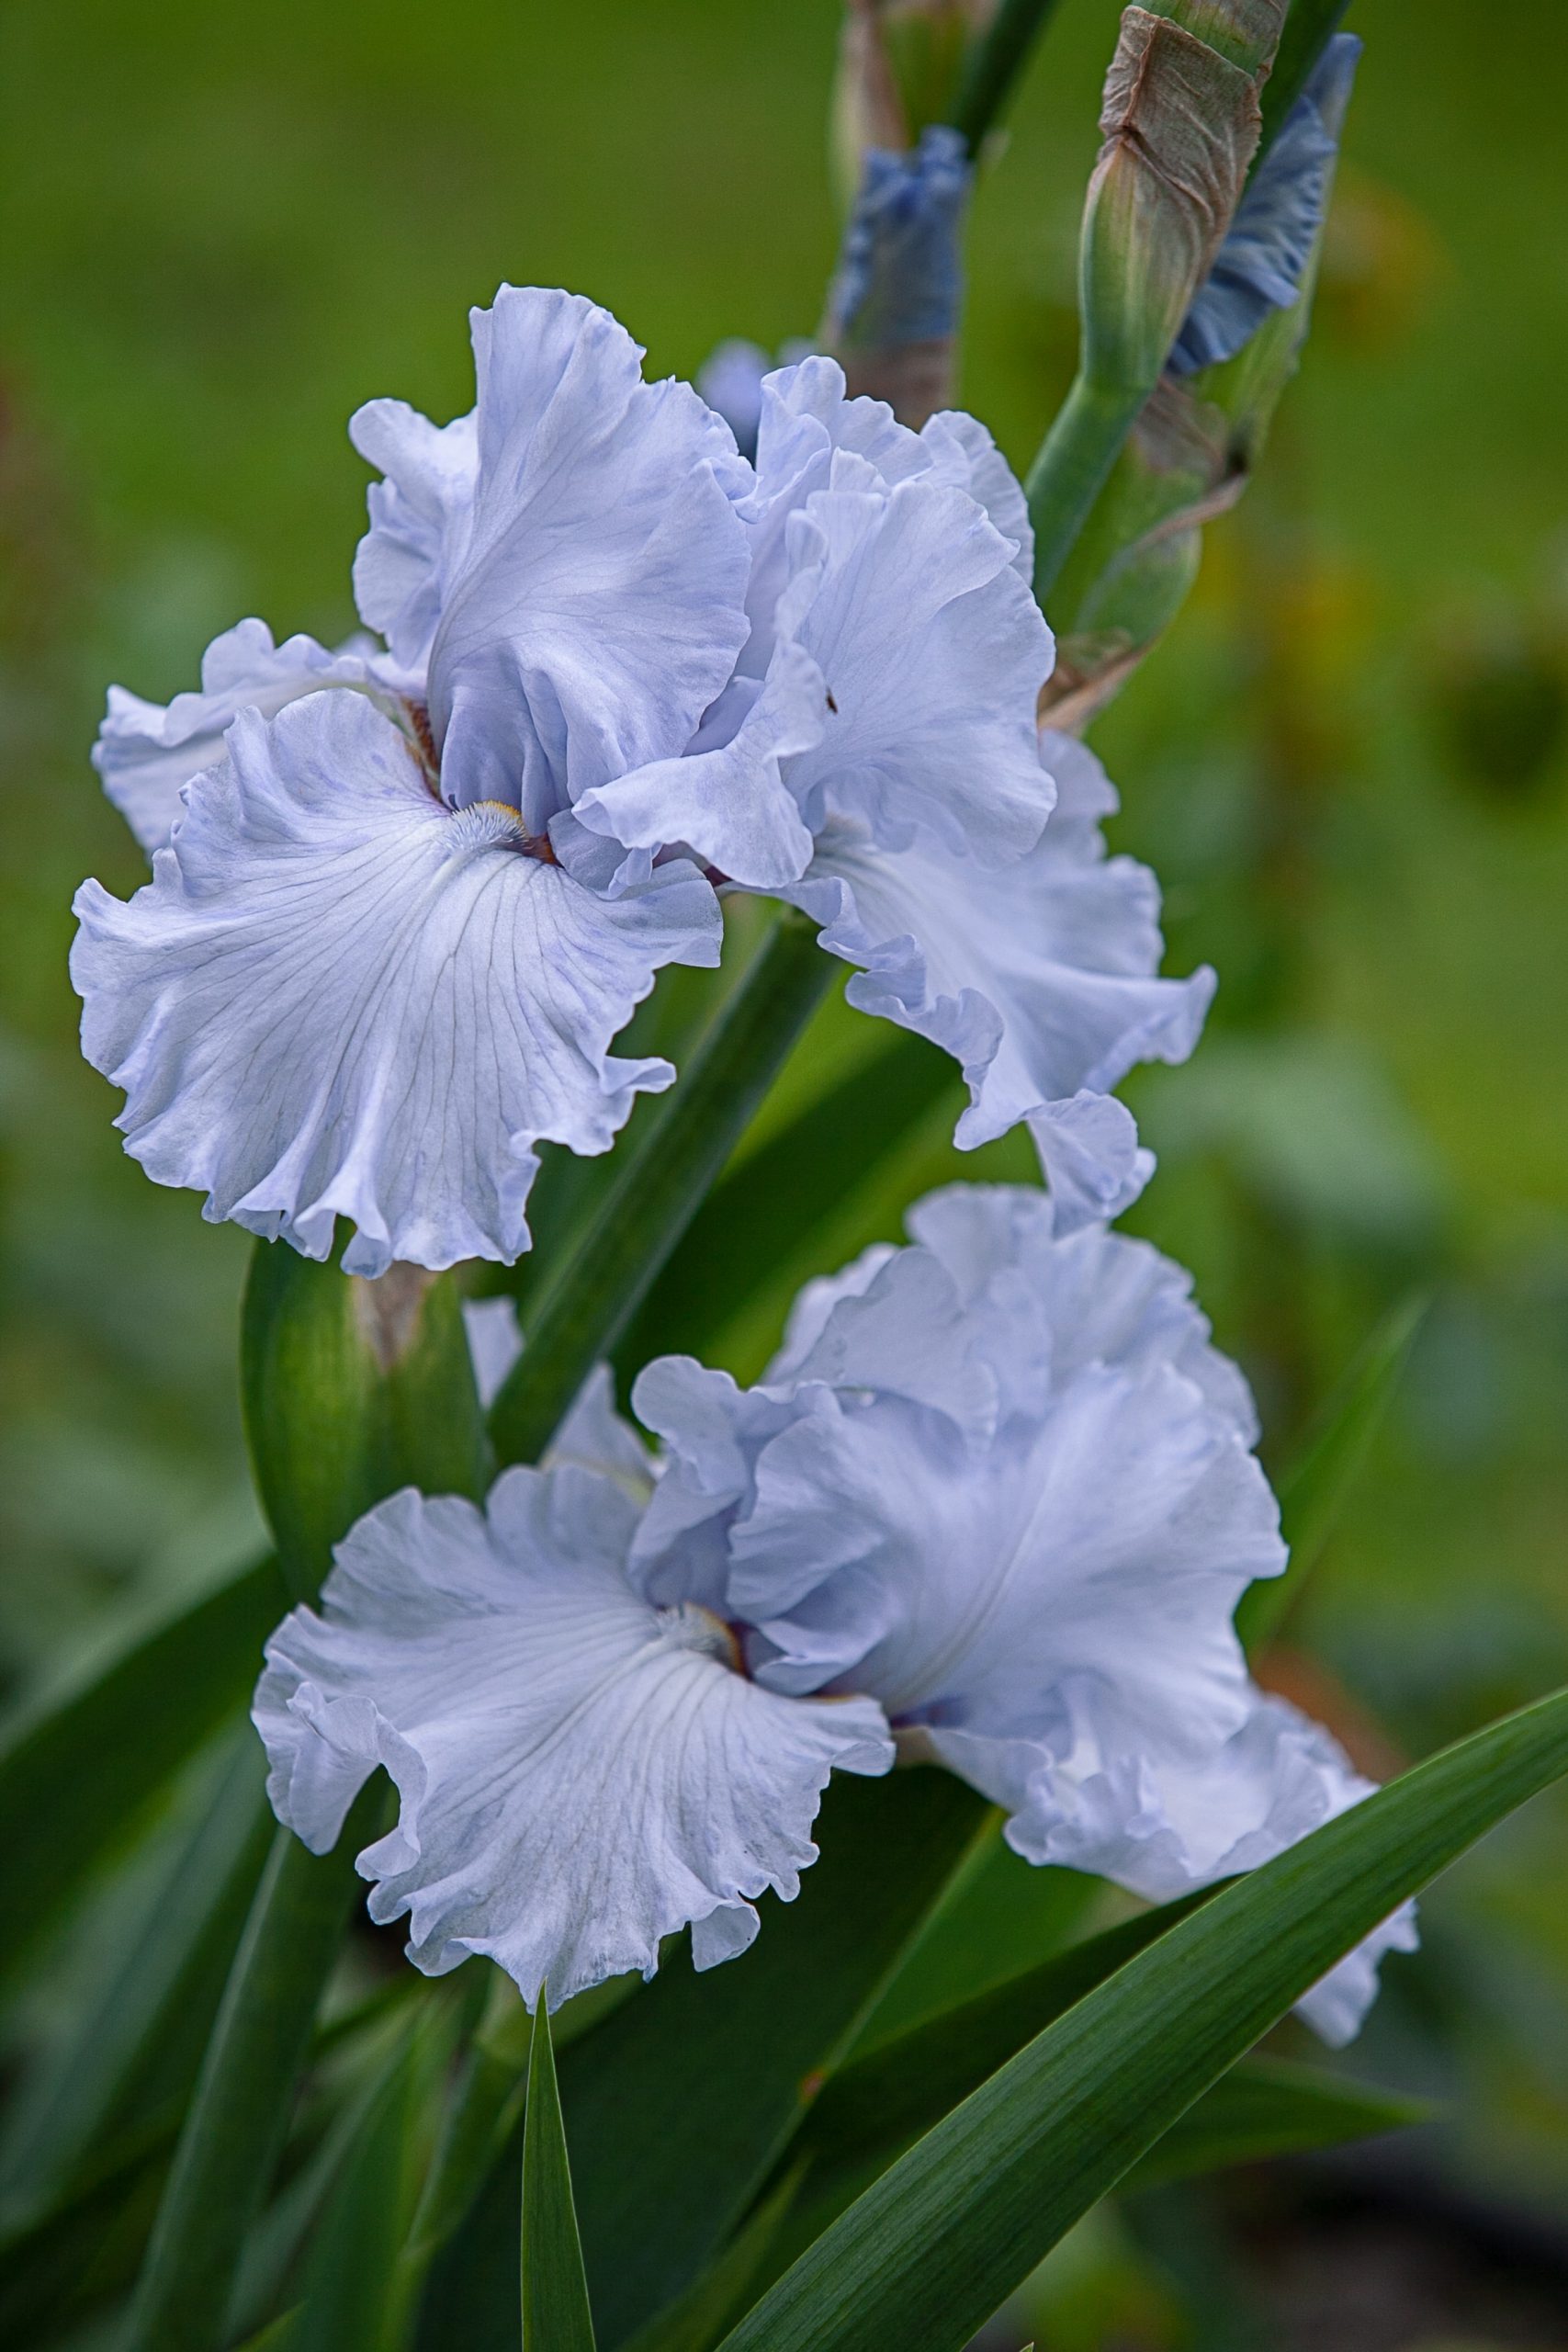 El Iris, flor oficial de febrero y figura mitológica